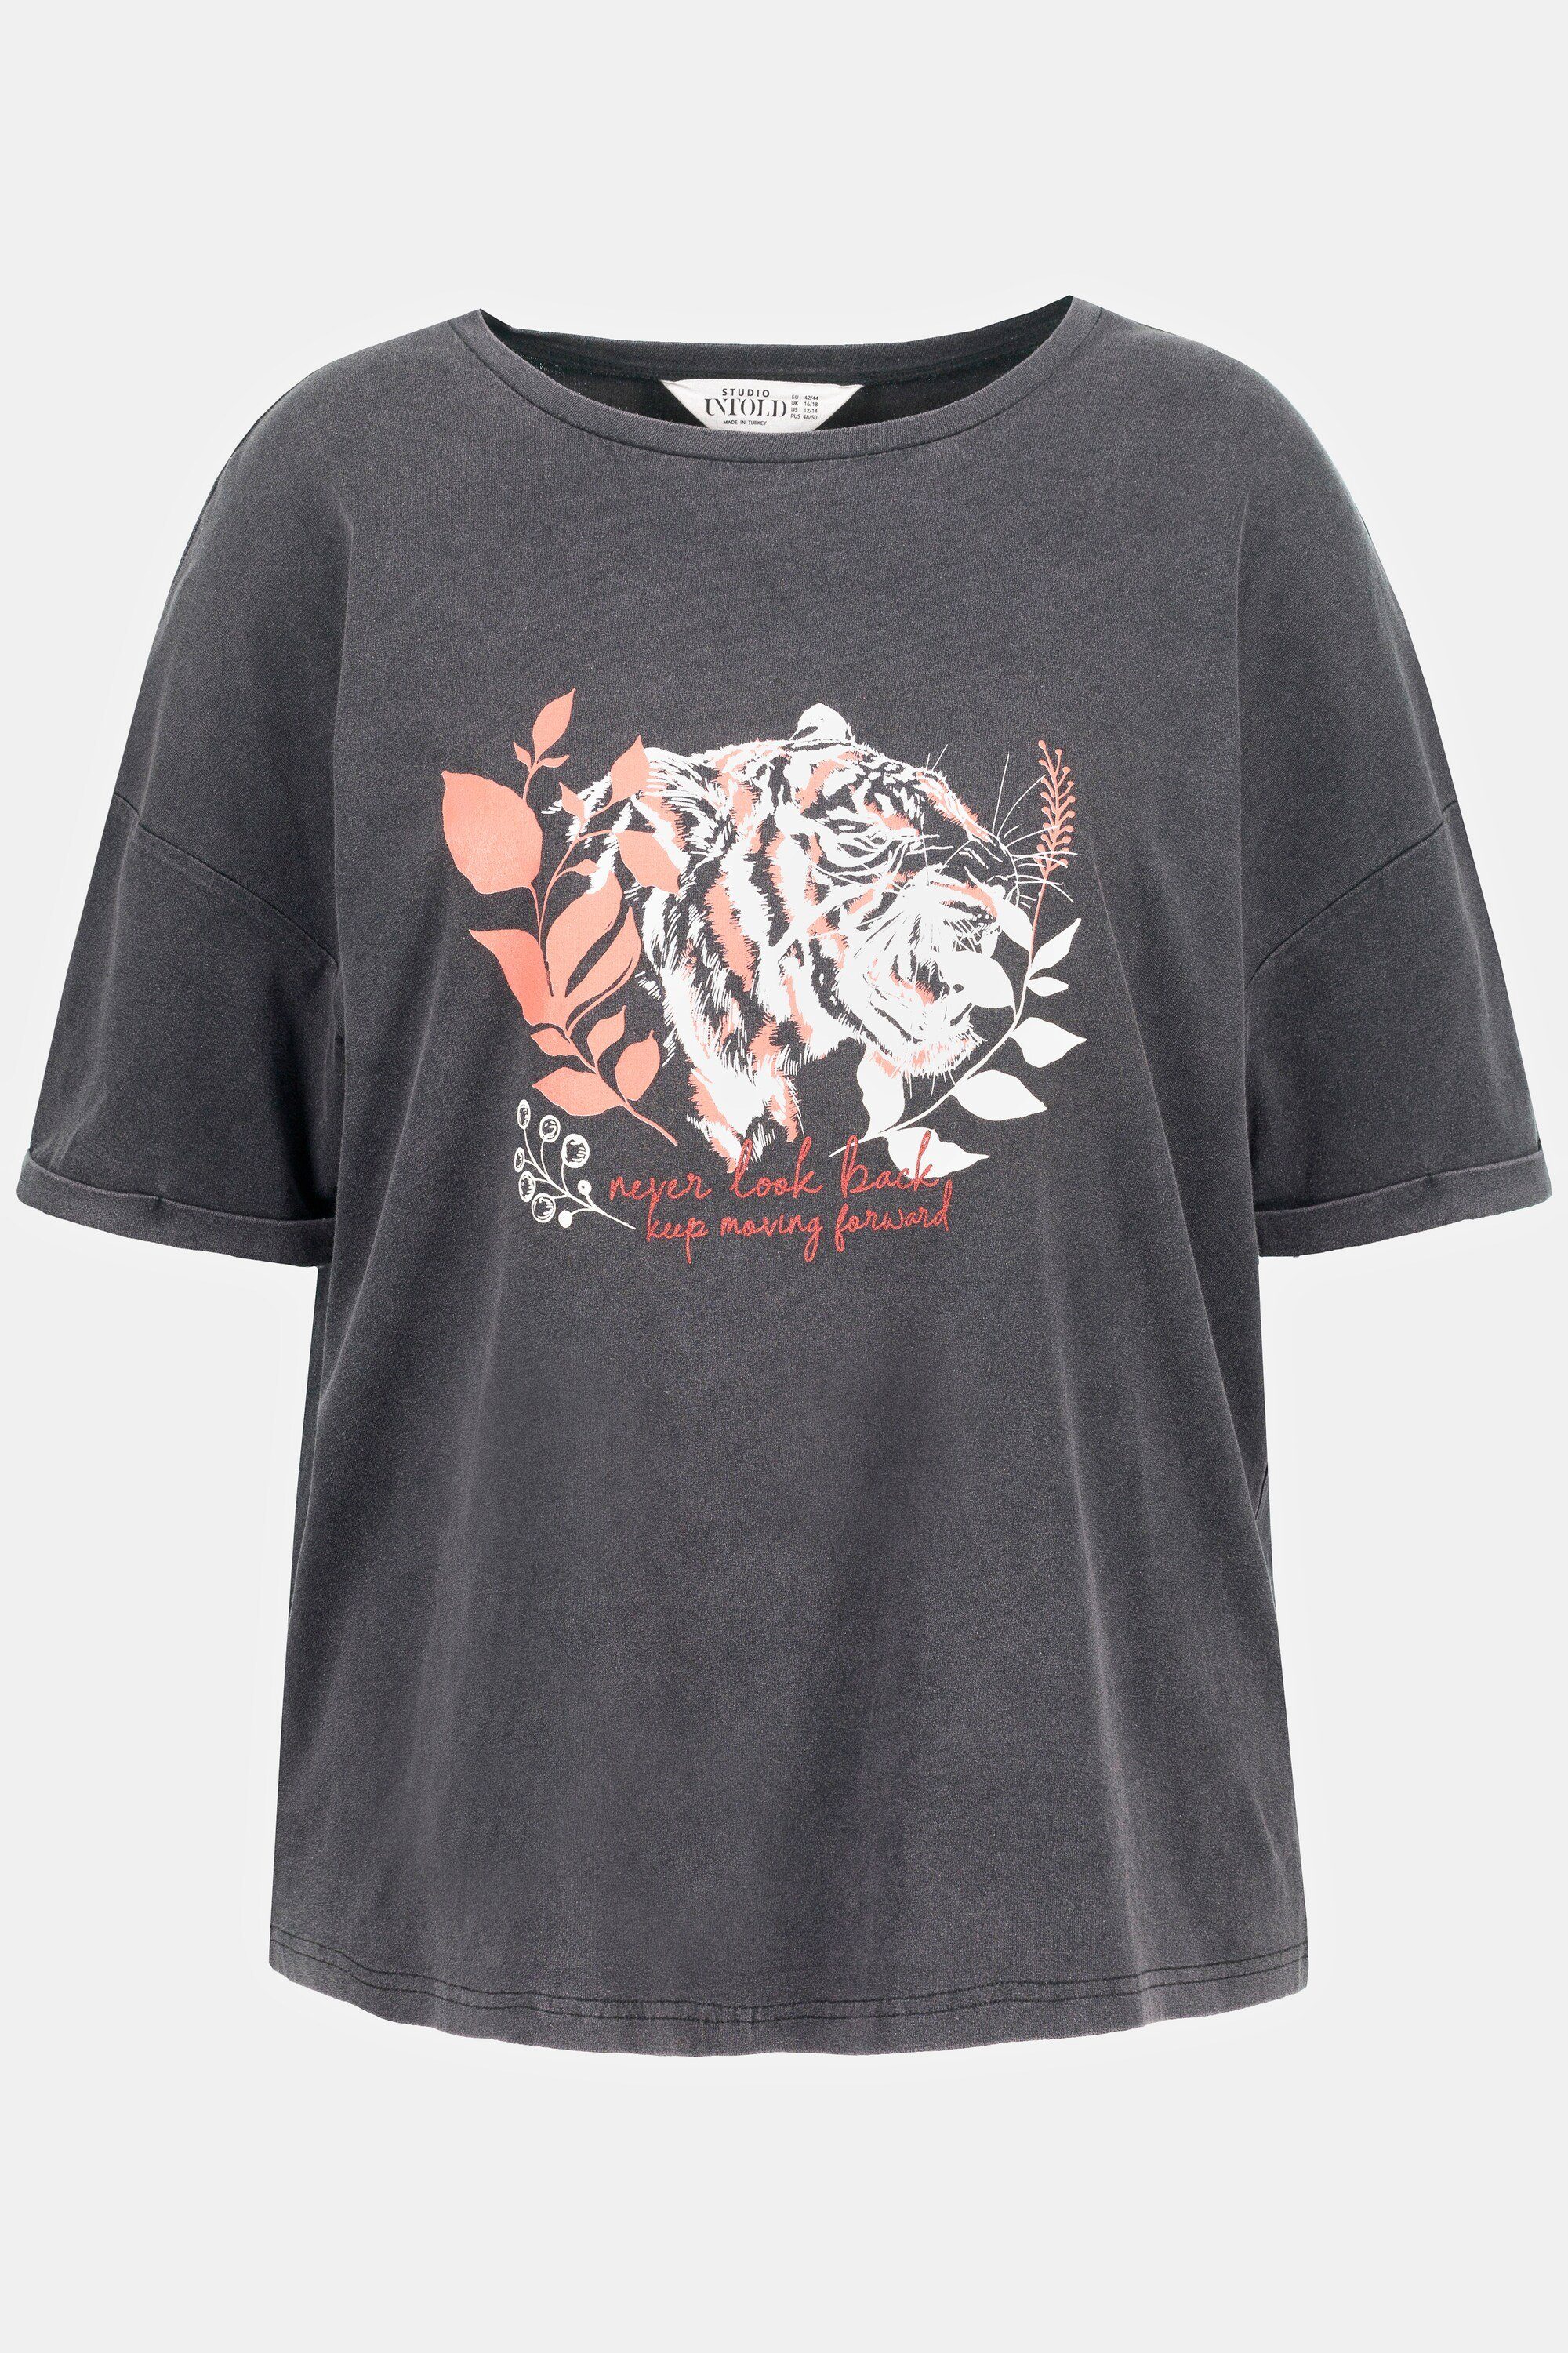 Studio Untold Longsleeve T-Shirt oversized Tiger Motiv acid washed Rundhals